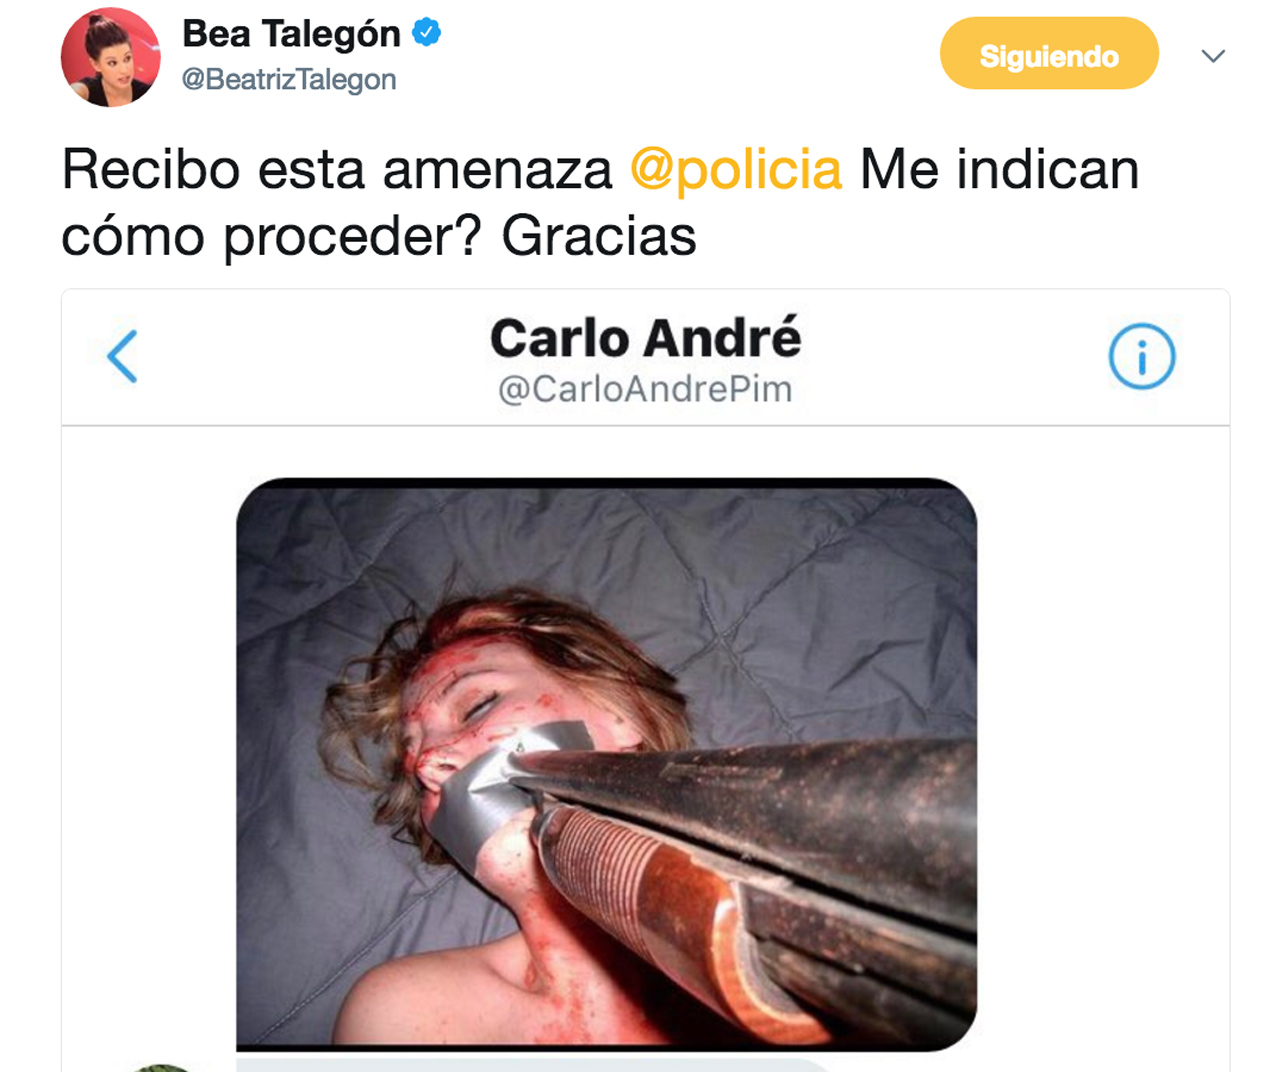 Imagen con la que amenazaron a Beatriz Talegón en Twitter.